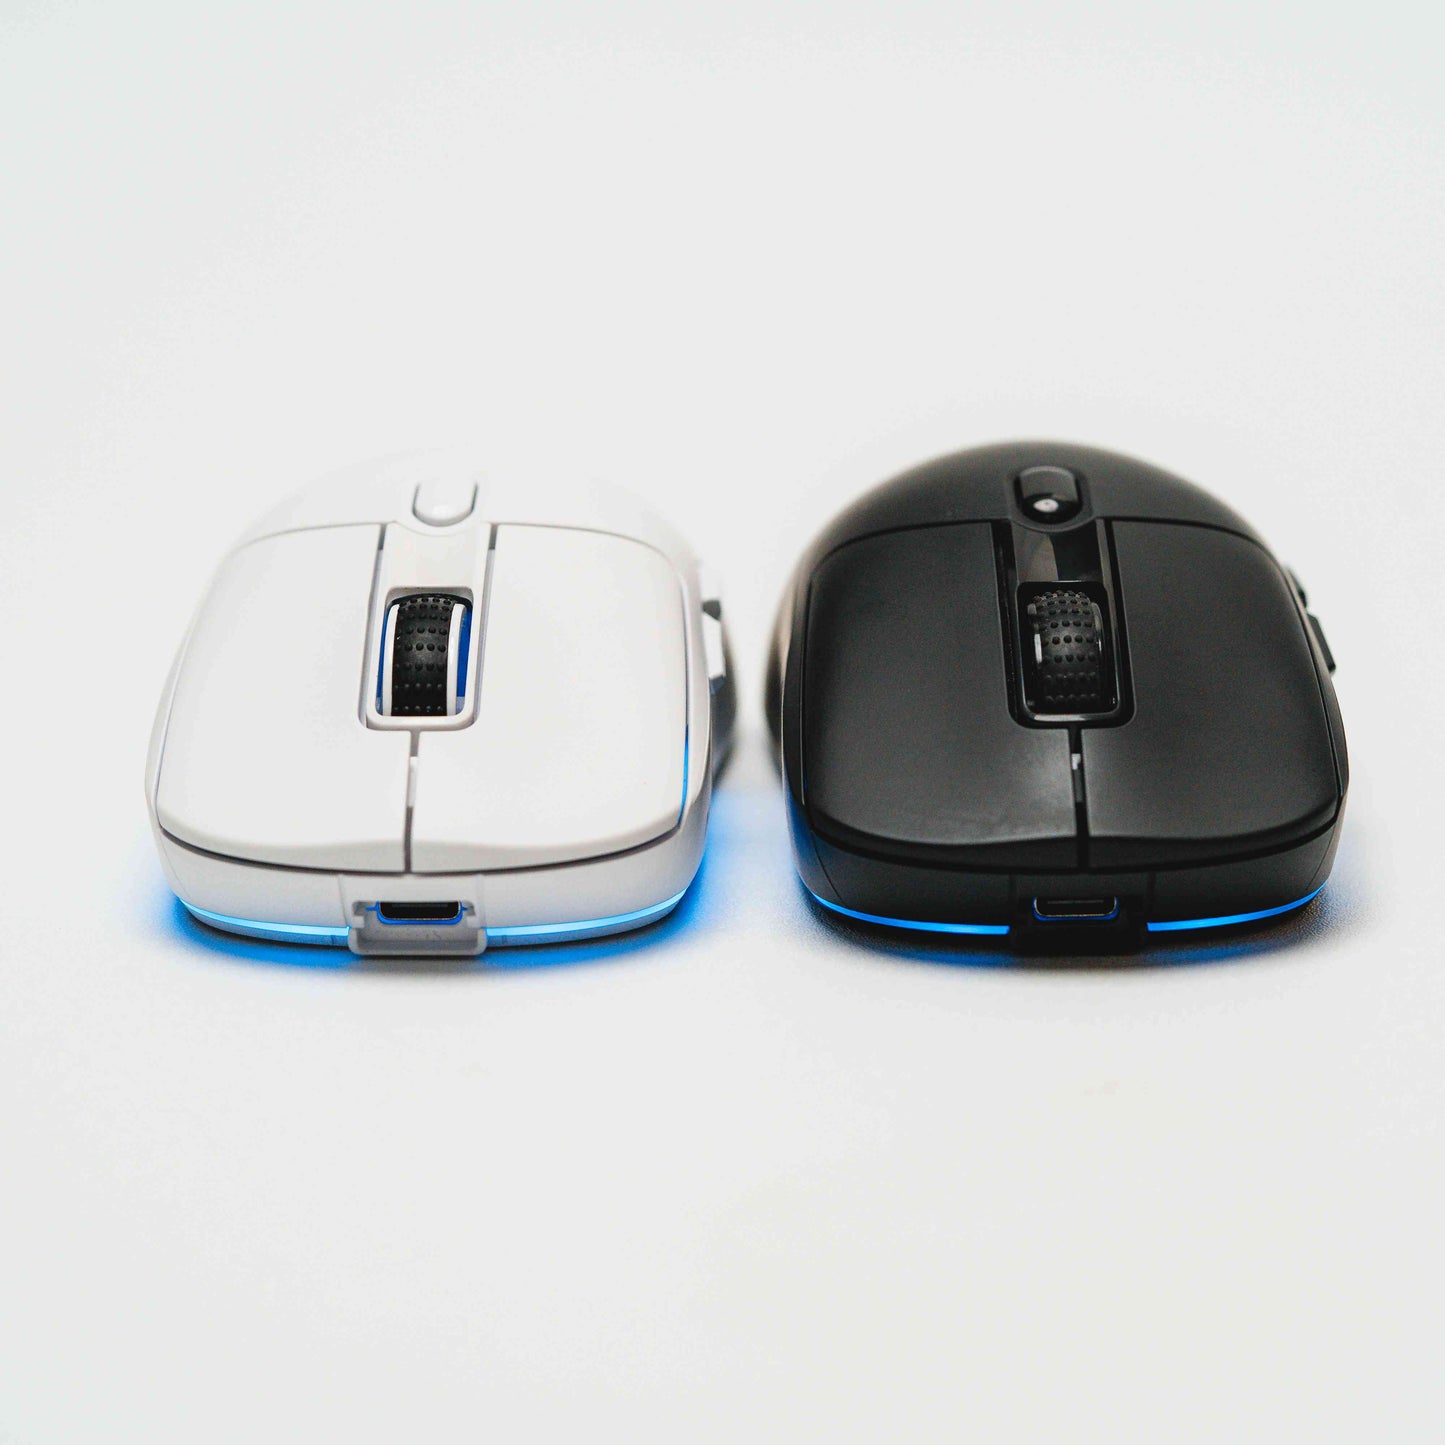 NOVA V4 Lighweight Wireless Gaming Mouse